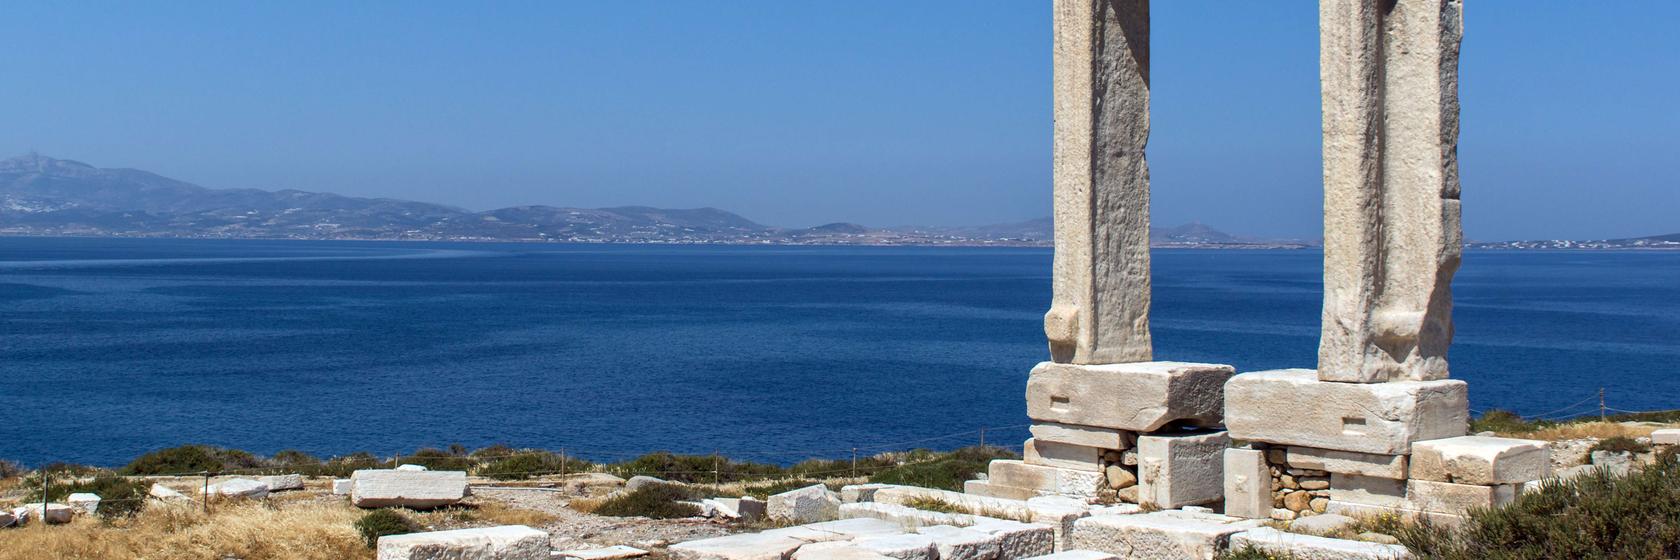 Tipy na výlety na Naxosu